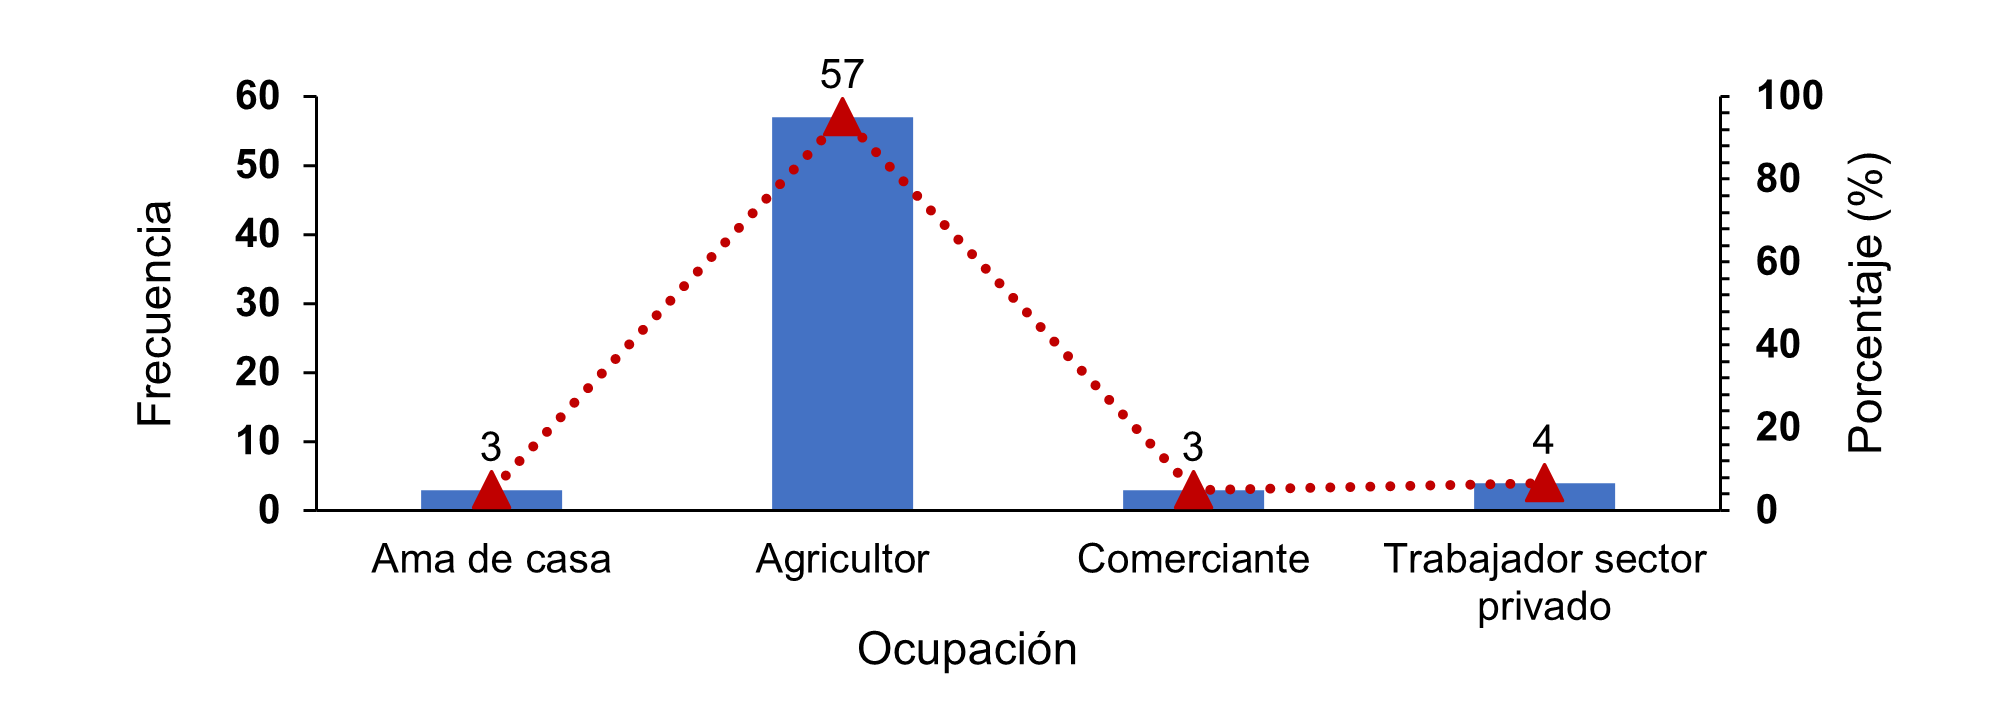 Ocupación de productores de repollo en cuatro cooperativas rurales en Jinotega, Nicaragua.